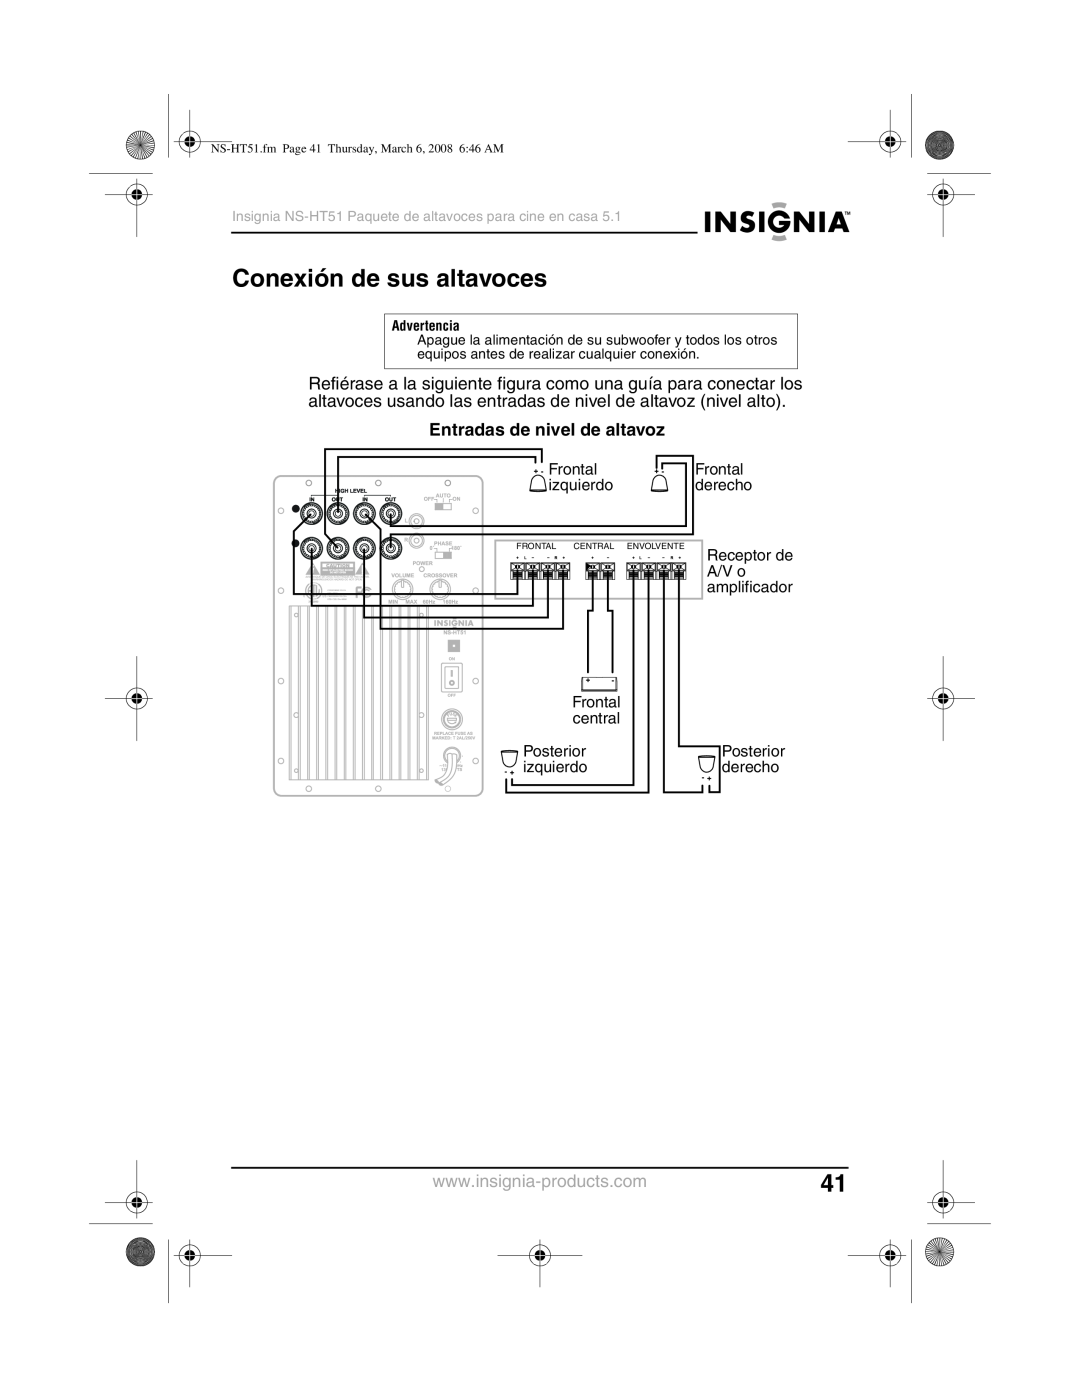 Insignia NS-HT51 manual Conexión de sus altavoces, Entradas de nivel de altavoz 